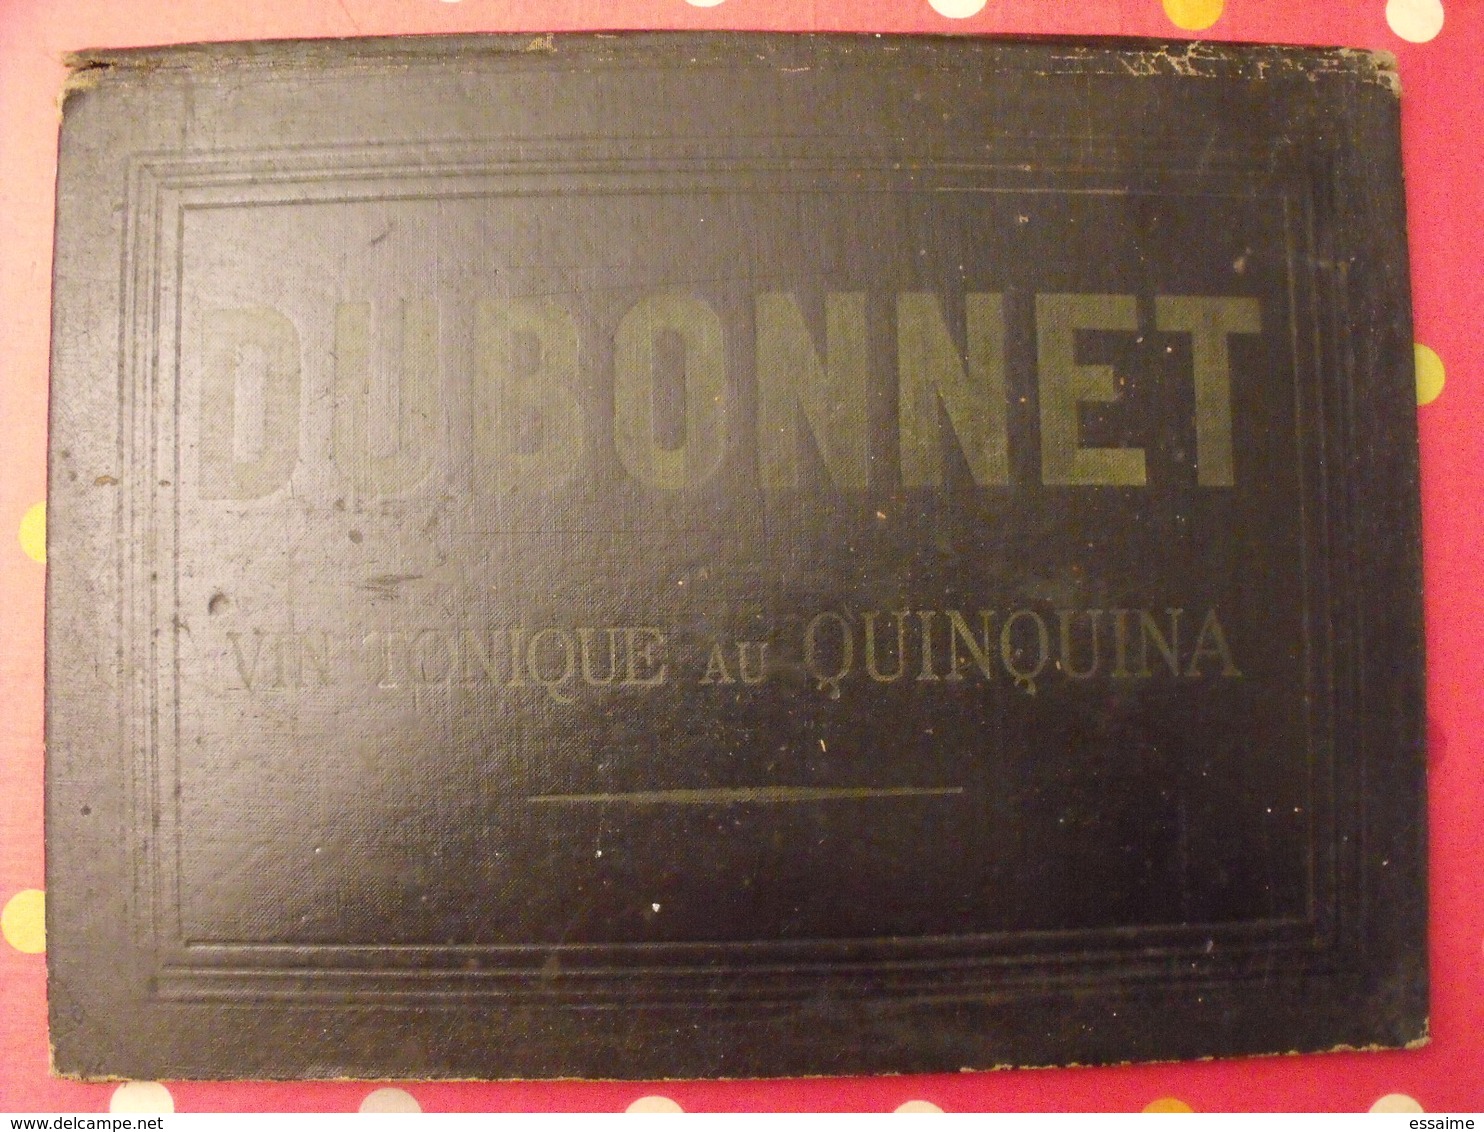 Sous-main Dubonnet, Vin Tonique Au Quiquina. Apéritif. Champagne Morlant Reims. Illustrateur : J Stall. Vers 1930 - Targhe Di Cartone